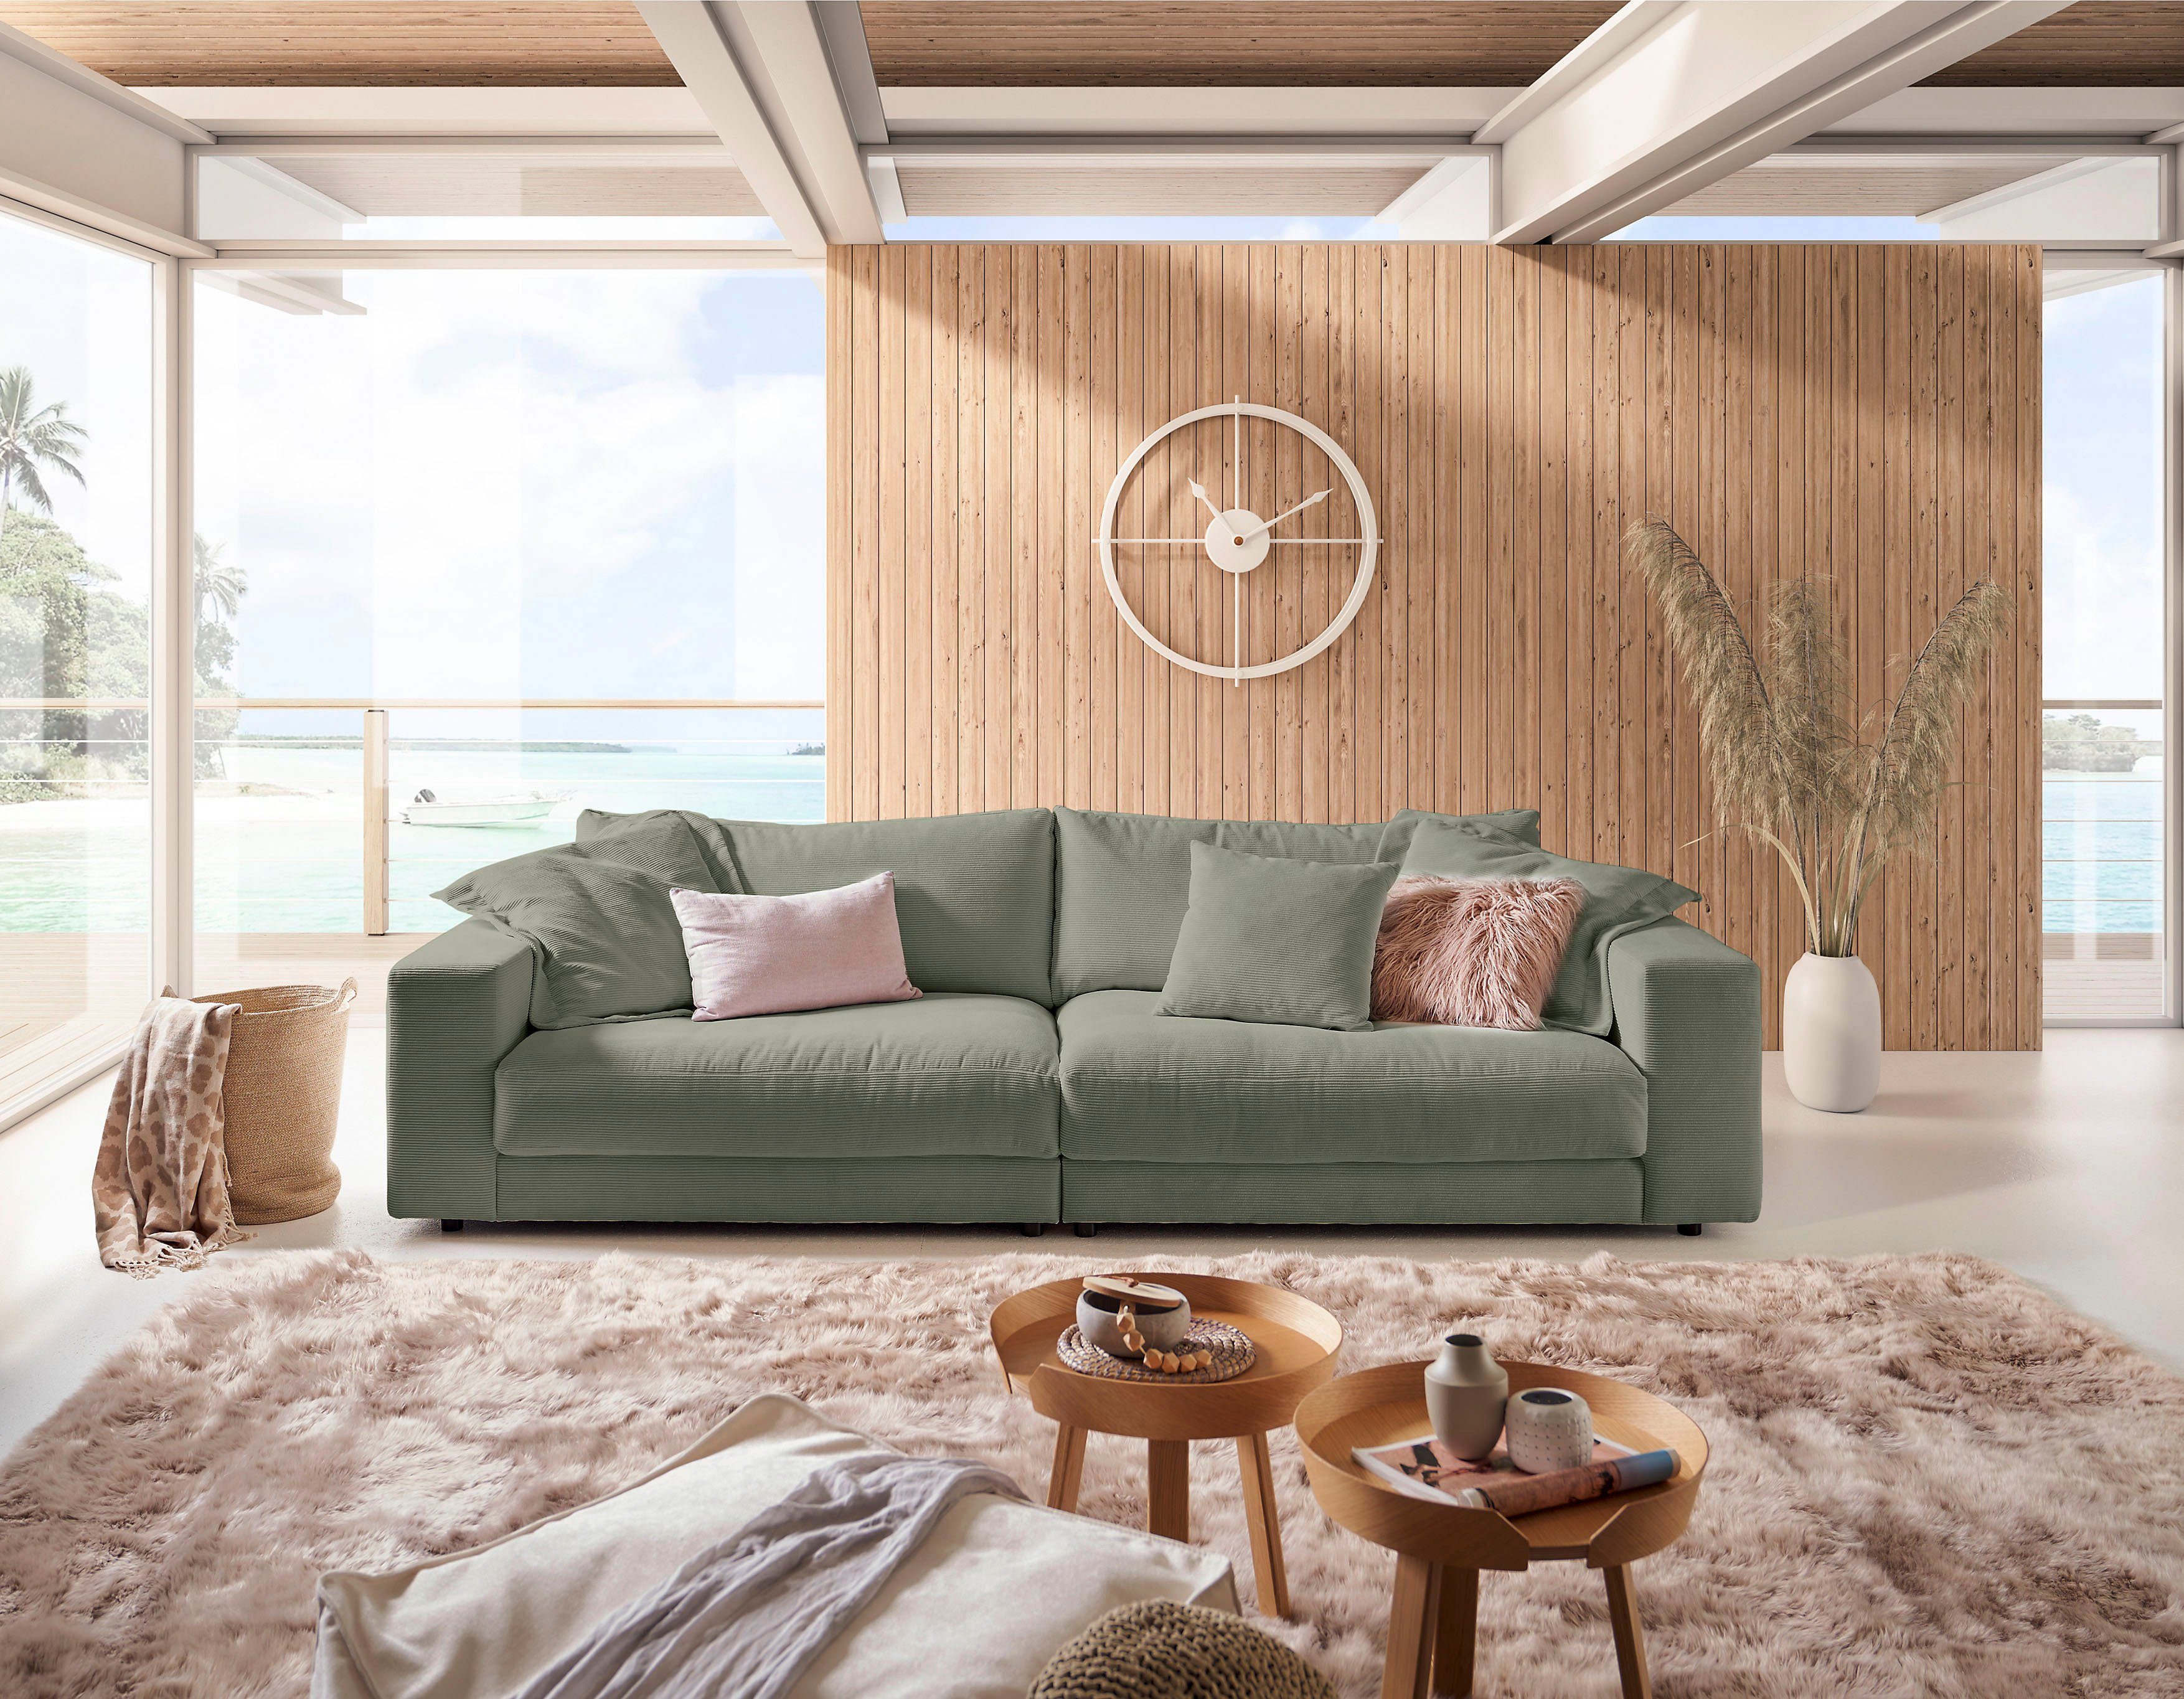 3C in und Breitcord stylisches und Enisa, Big-Sofa Zeitloses Loungemöbel, Candy Fein-